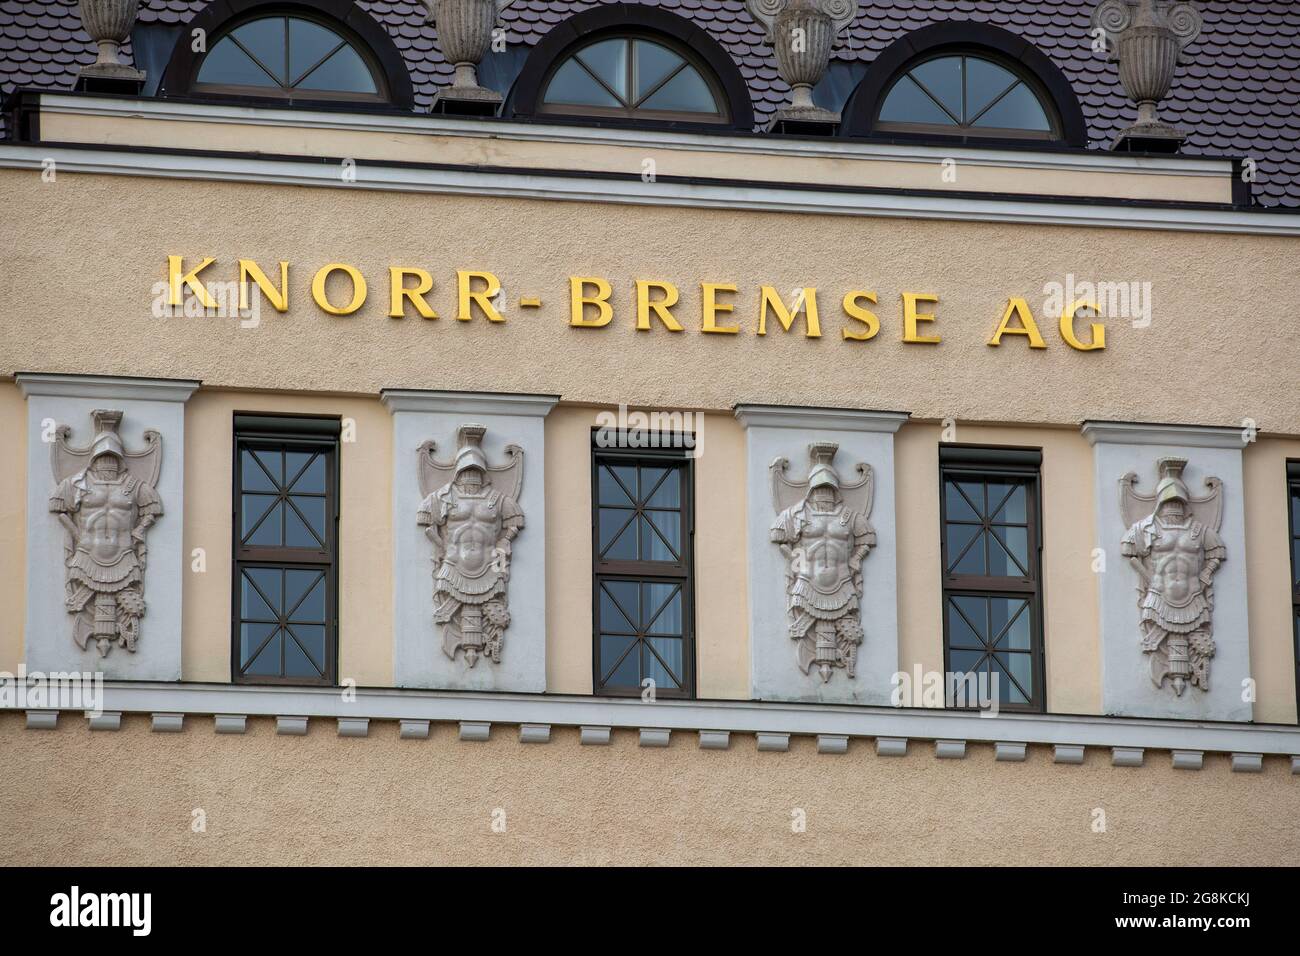 Der Hauptsitz von Knorr Bremse in München. Knorr-Bremse ist ein deutsches Unternehmen, welches weltweit führender Hersteller von Bremssystemen für Schienen- und Nutzfahrzeuge ist. 2018 ginging das Unternehmen an die Börse und ist aktuell im MDAX gelistet. (Foto di Alexander Pohl/Sipa USA) Foto Stock